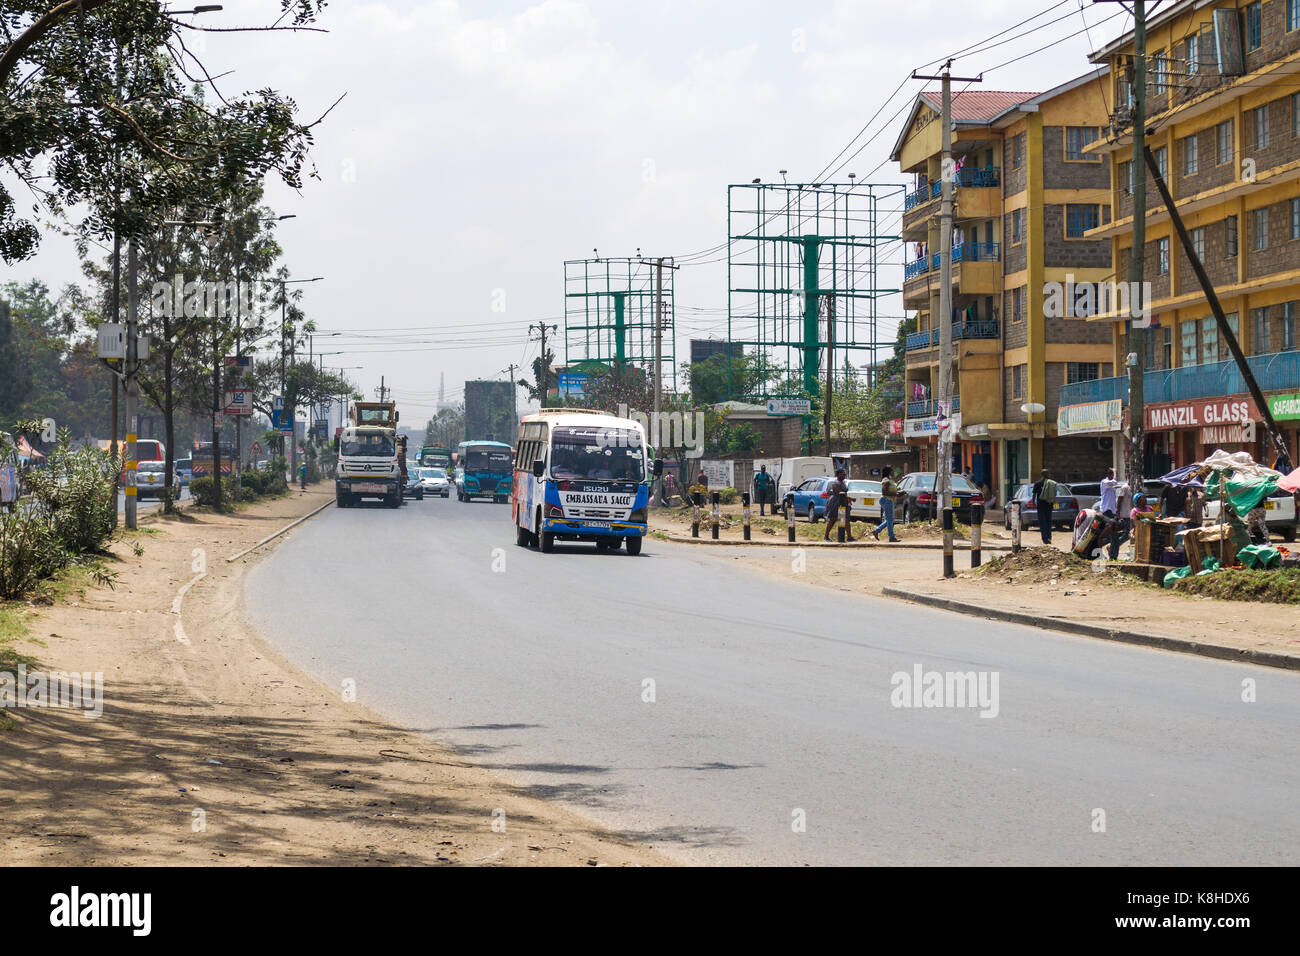 Veicoli auto giù Jogoo road con le persone e gli edifici in background, Nairobi, Kenia Foto Stock